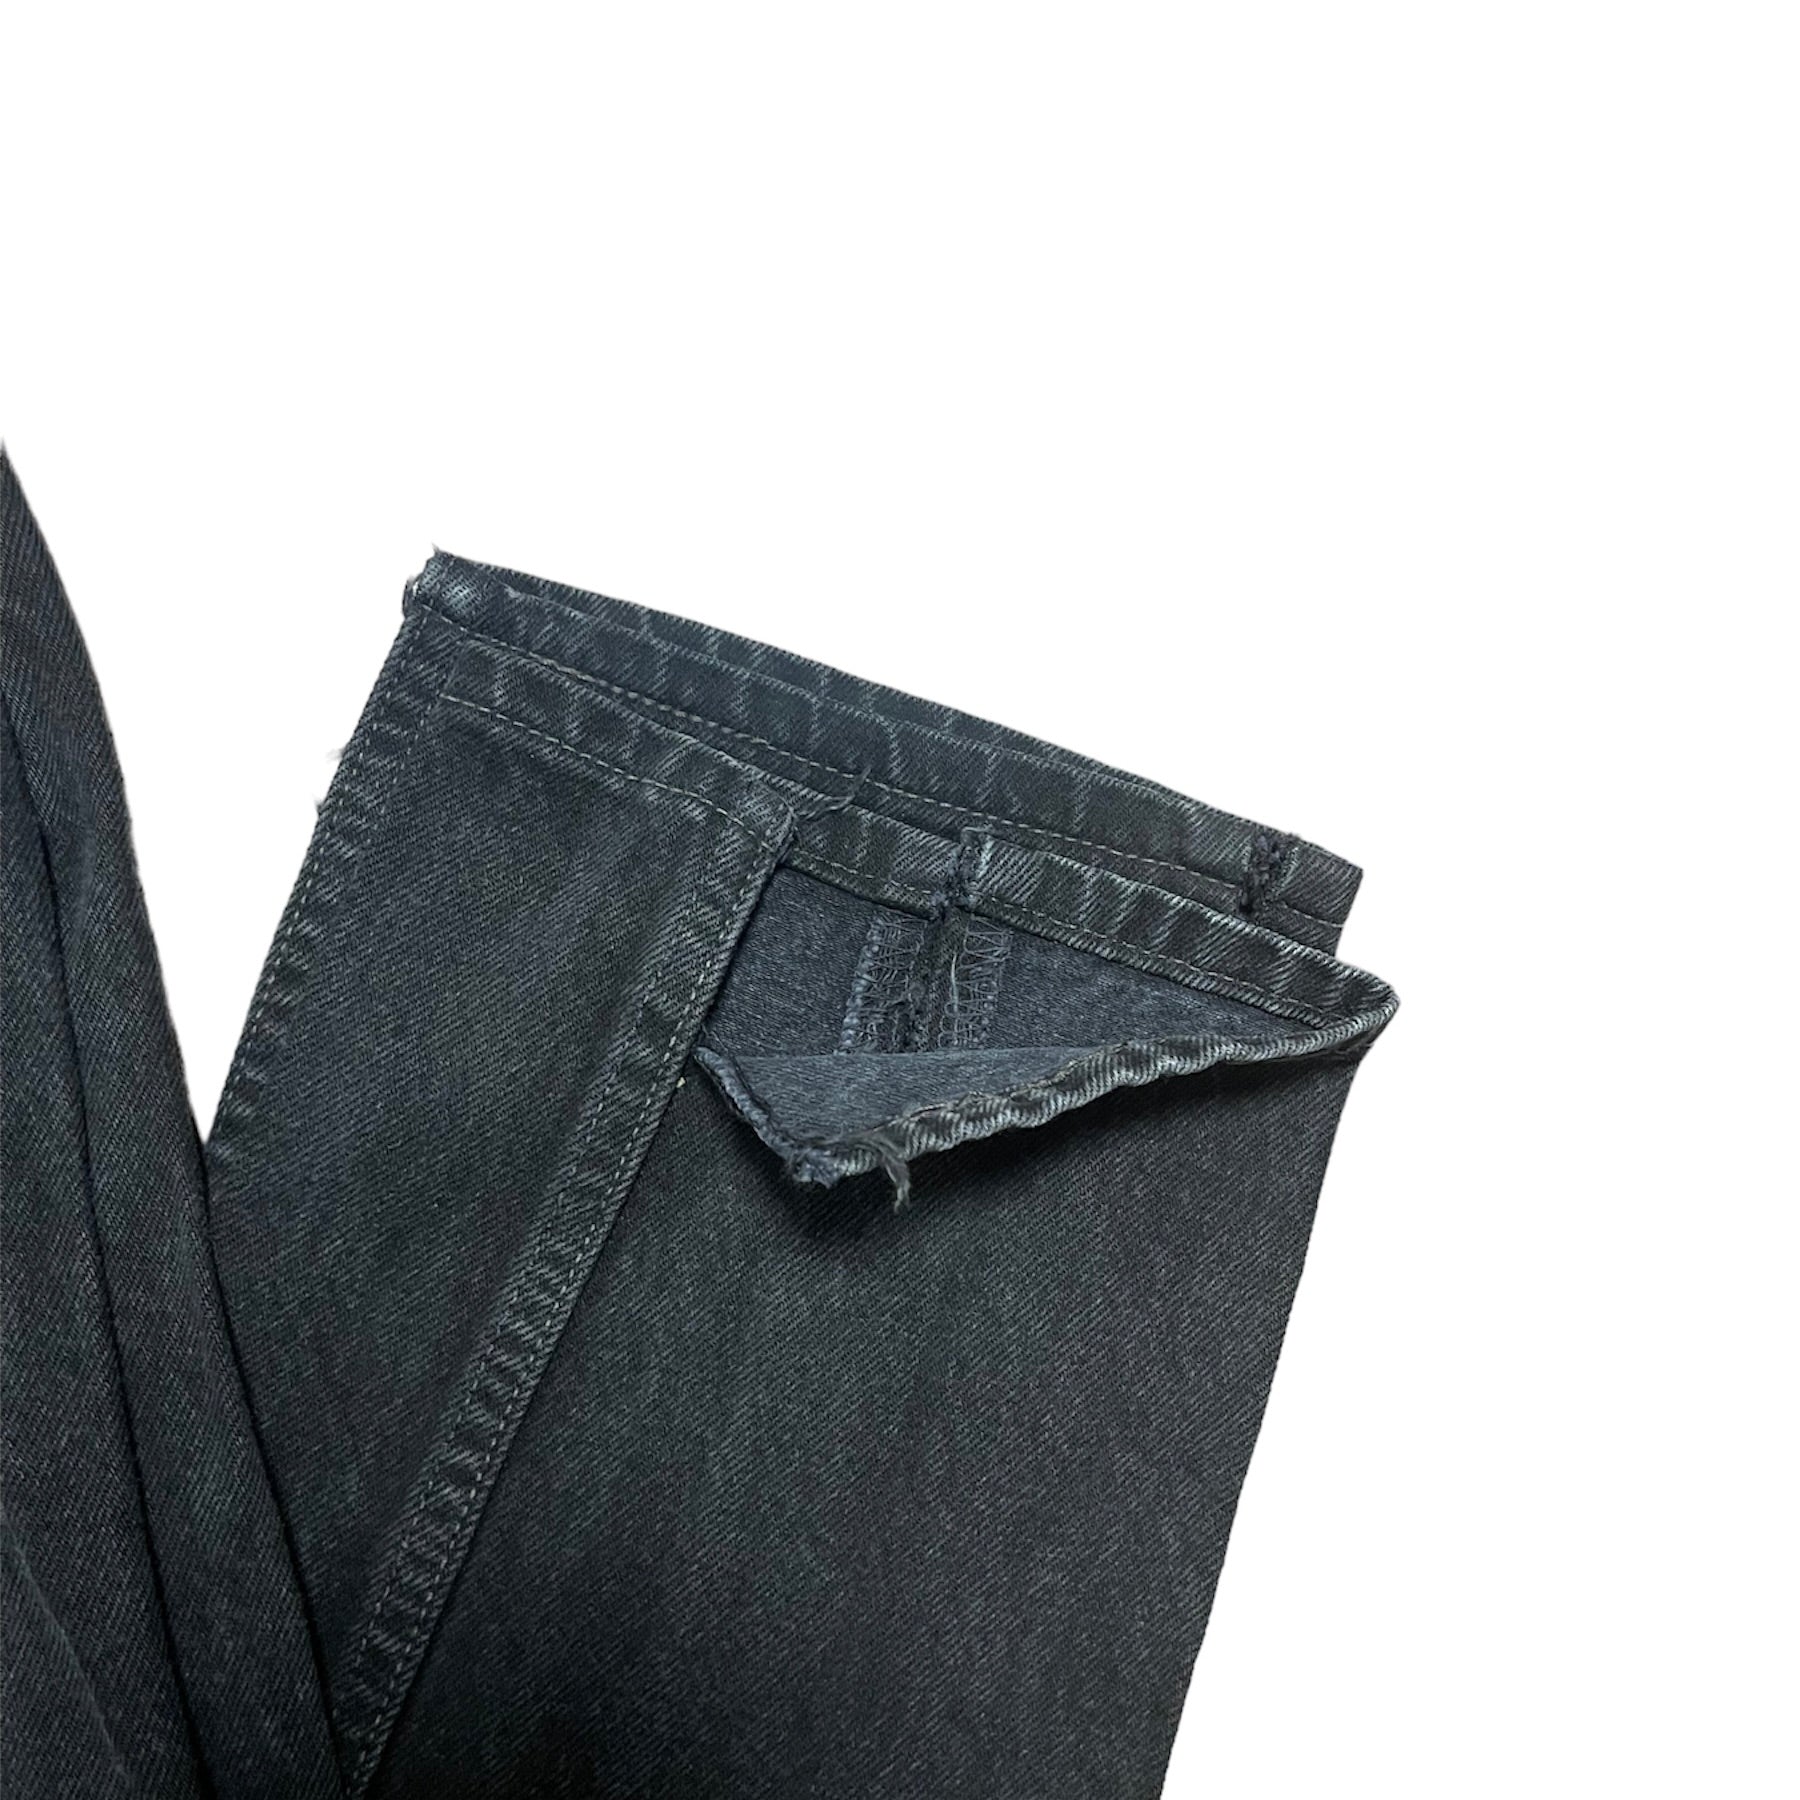 Vintage Levis 501 Black/Grey Jeans (W28/L34)